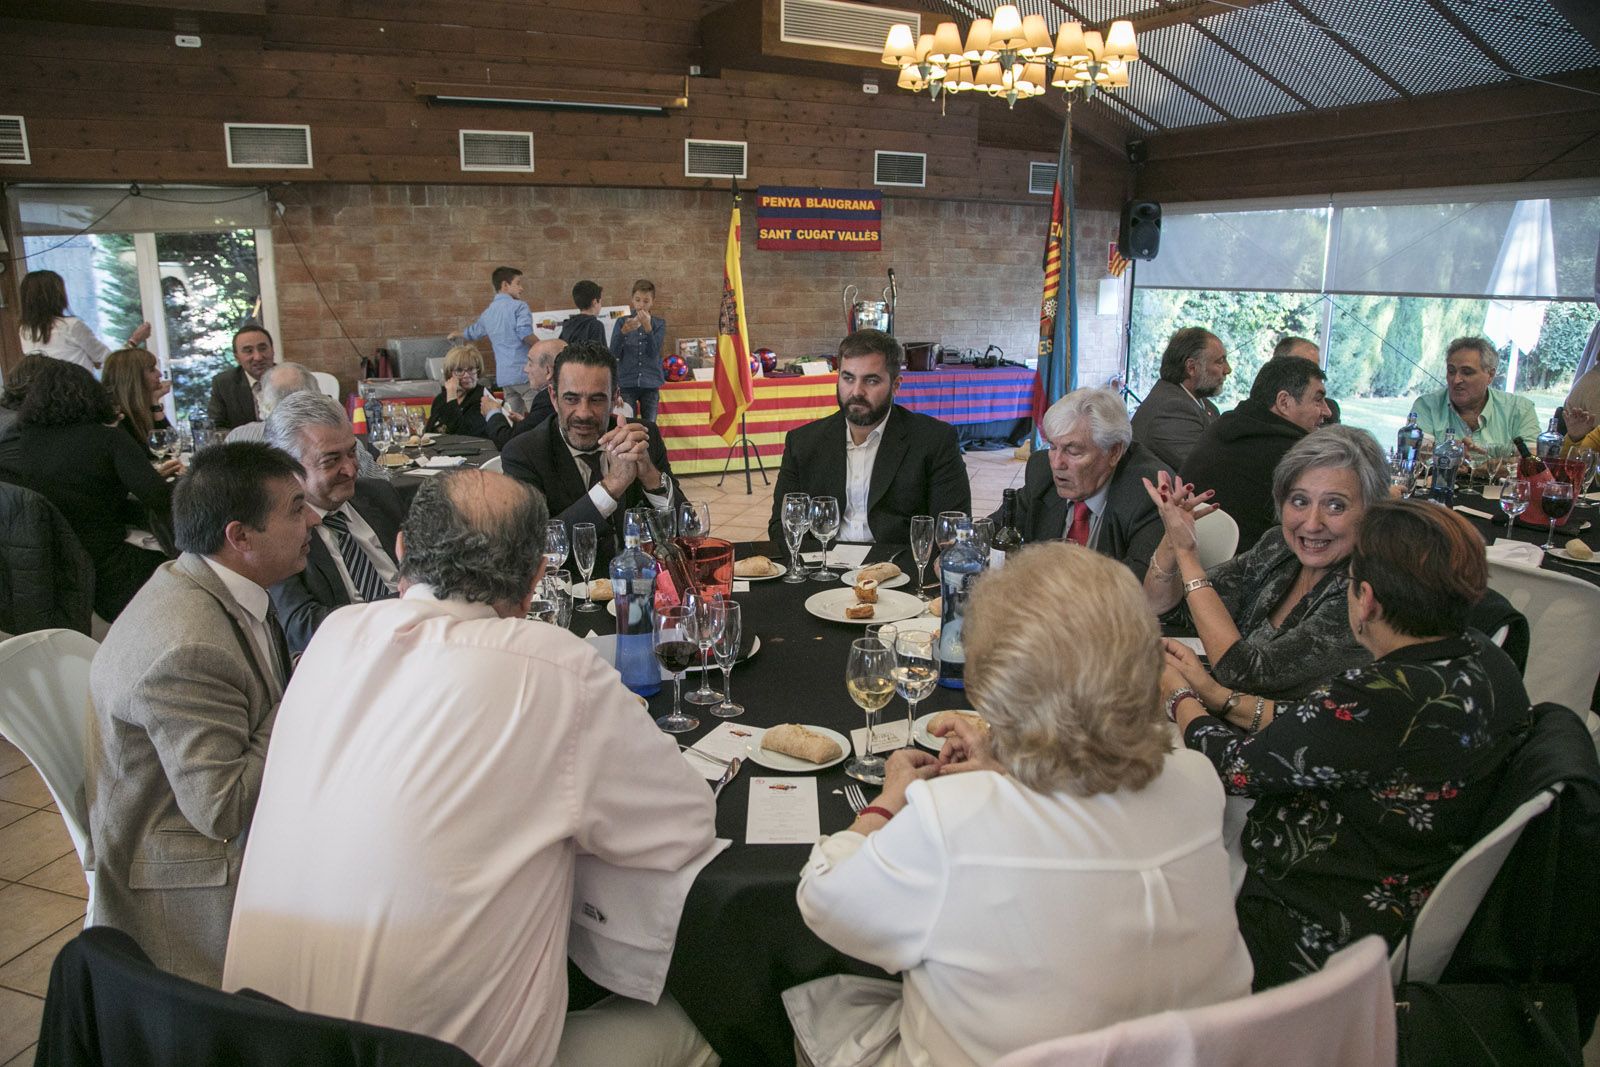 La taula presidencial del dinar. FOTO: Lali Puig